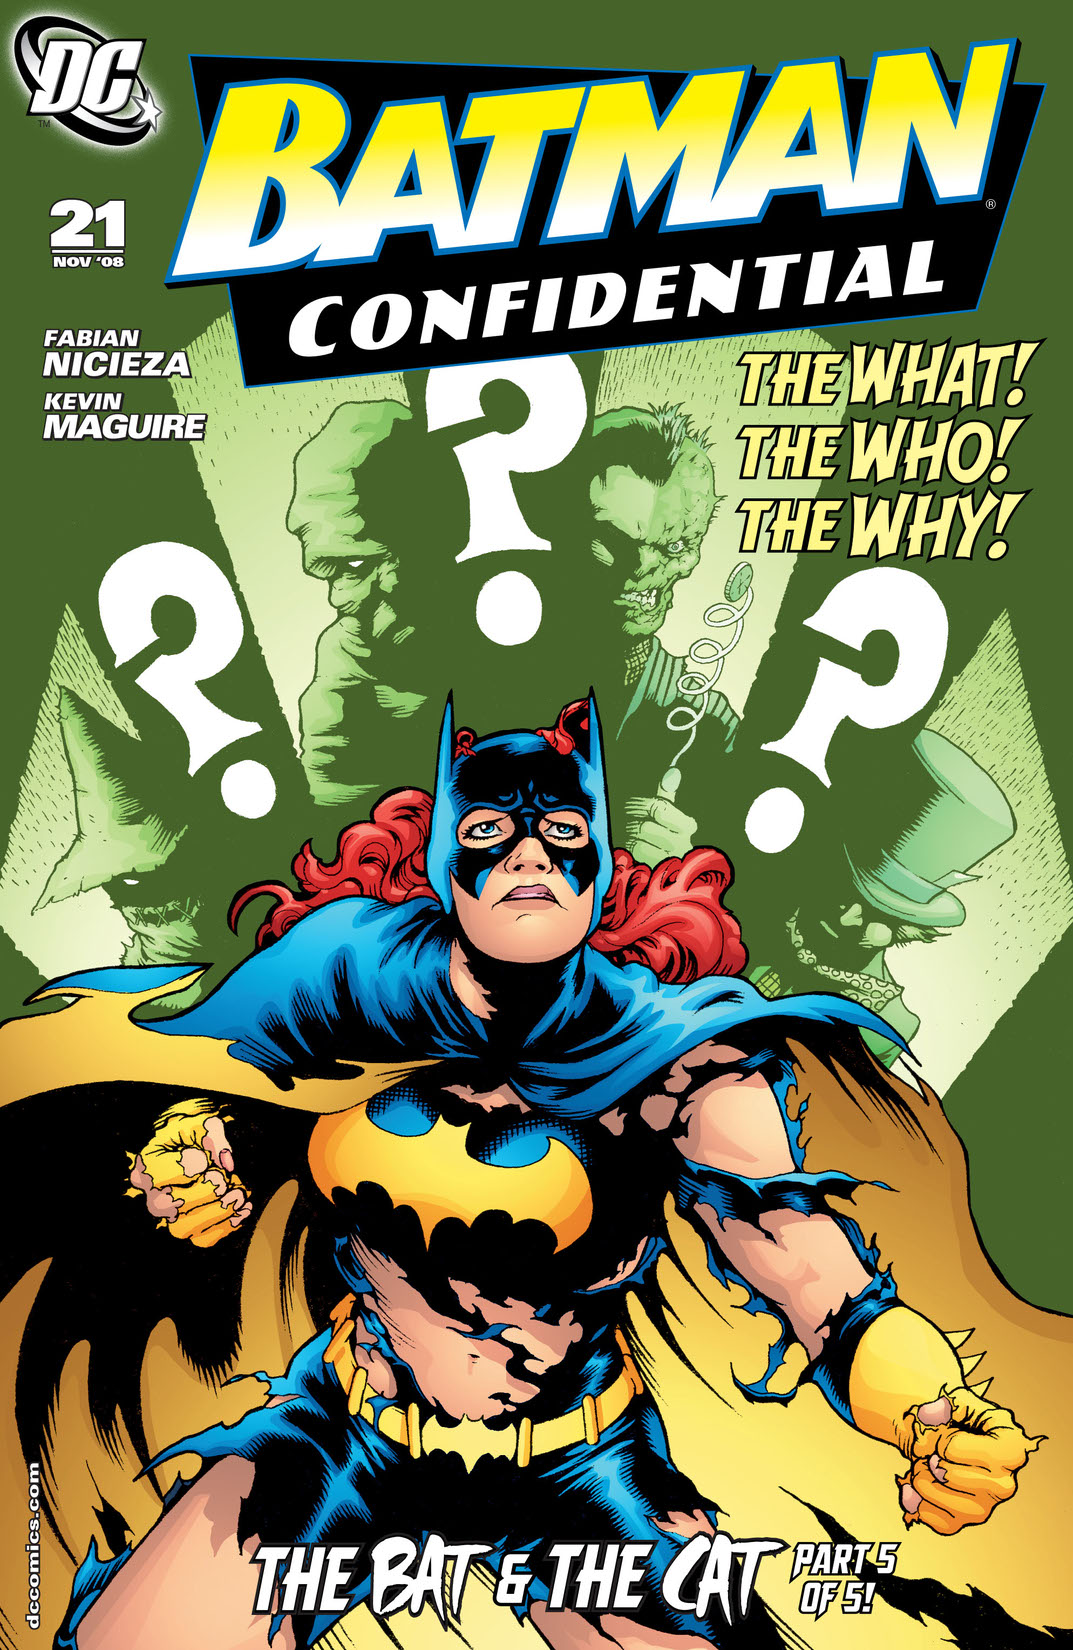 Batman Confidential #21 preview images